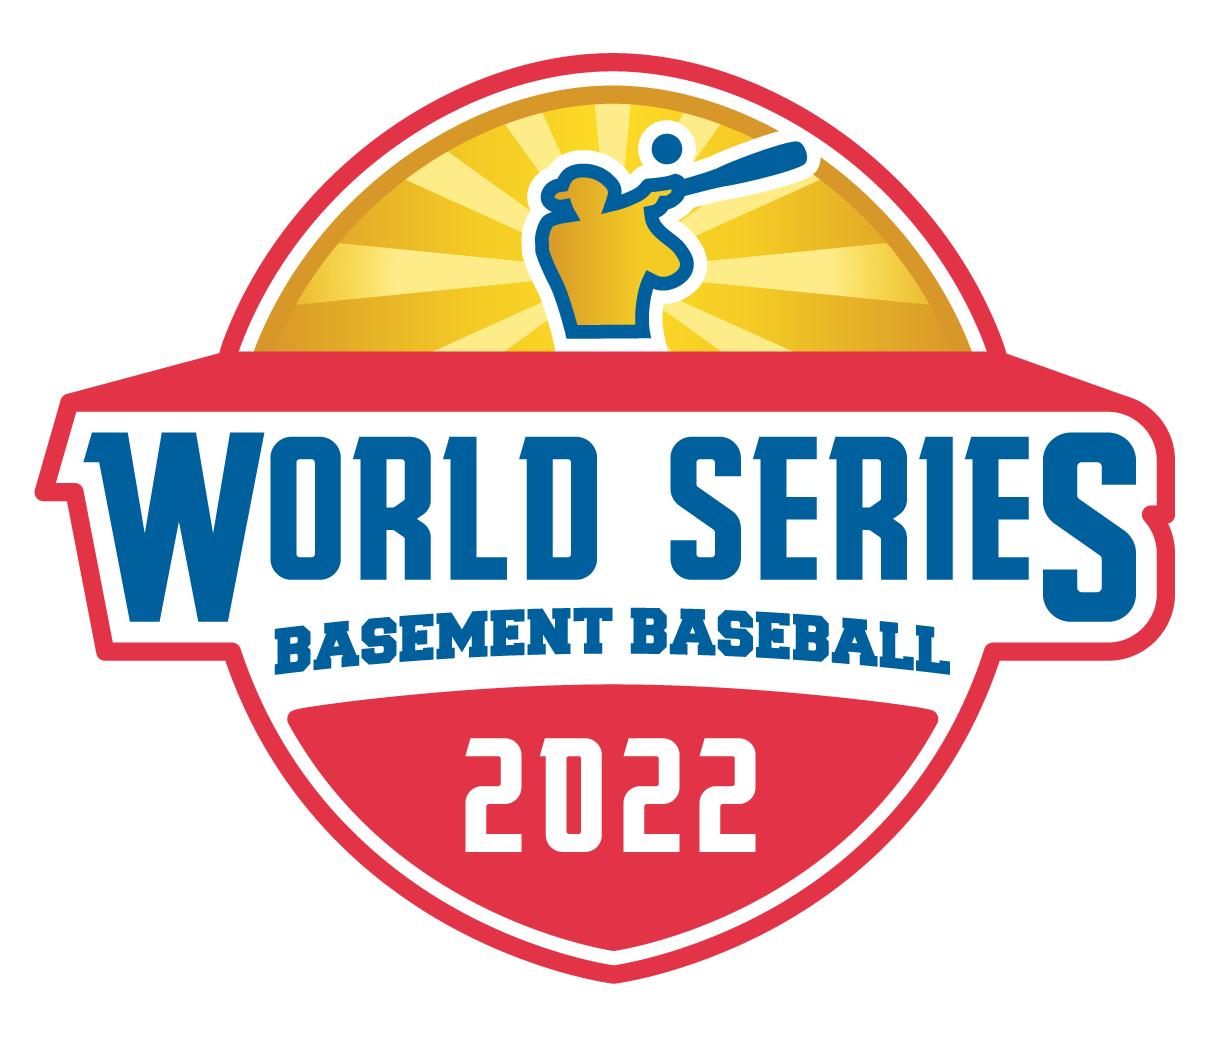 Basement Baseball World Series 2022 Tournament Begins Basement Sports